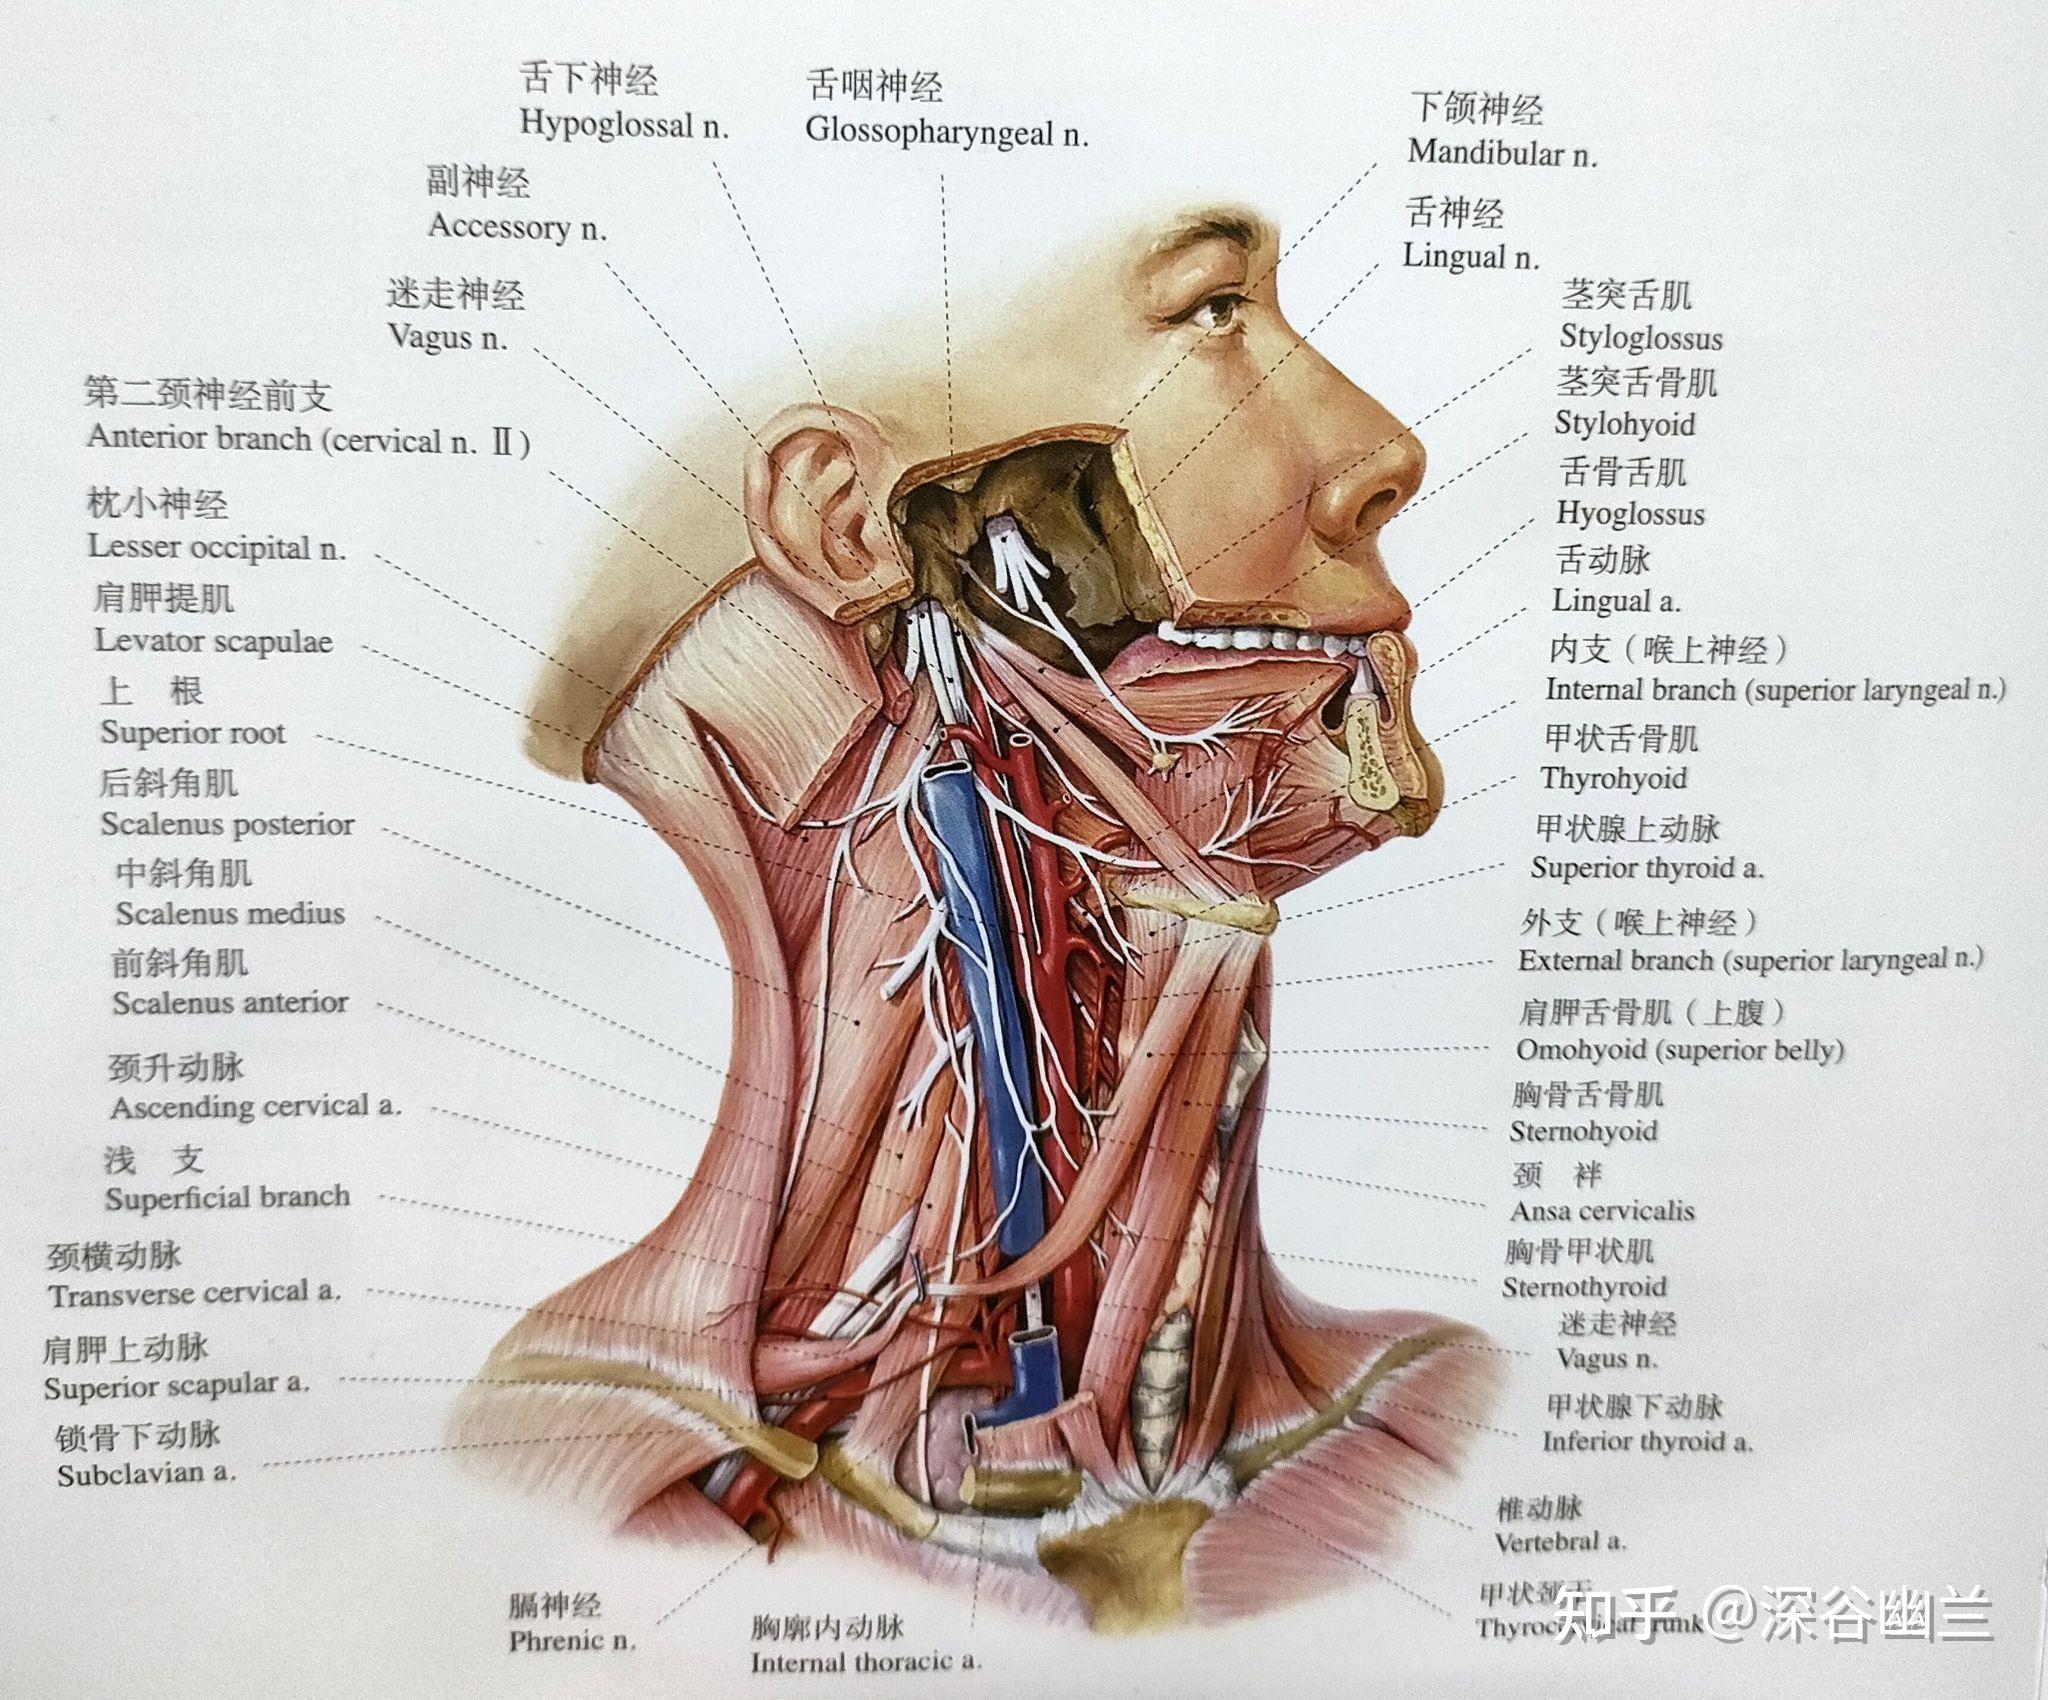 前颈部肌肉有胸锁乳突肌,前斜角肌,胸骨舌骨肌,肩胛舌骨肌,胸骨甲状肌